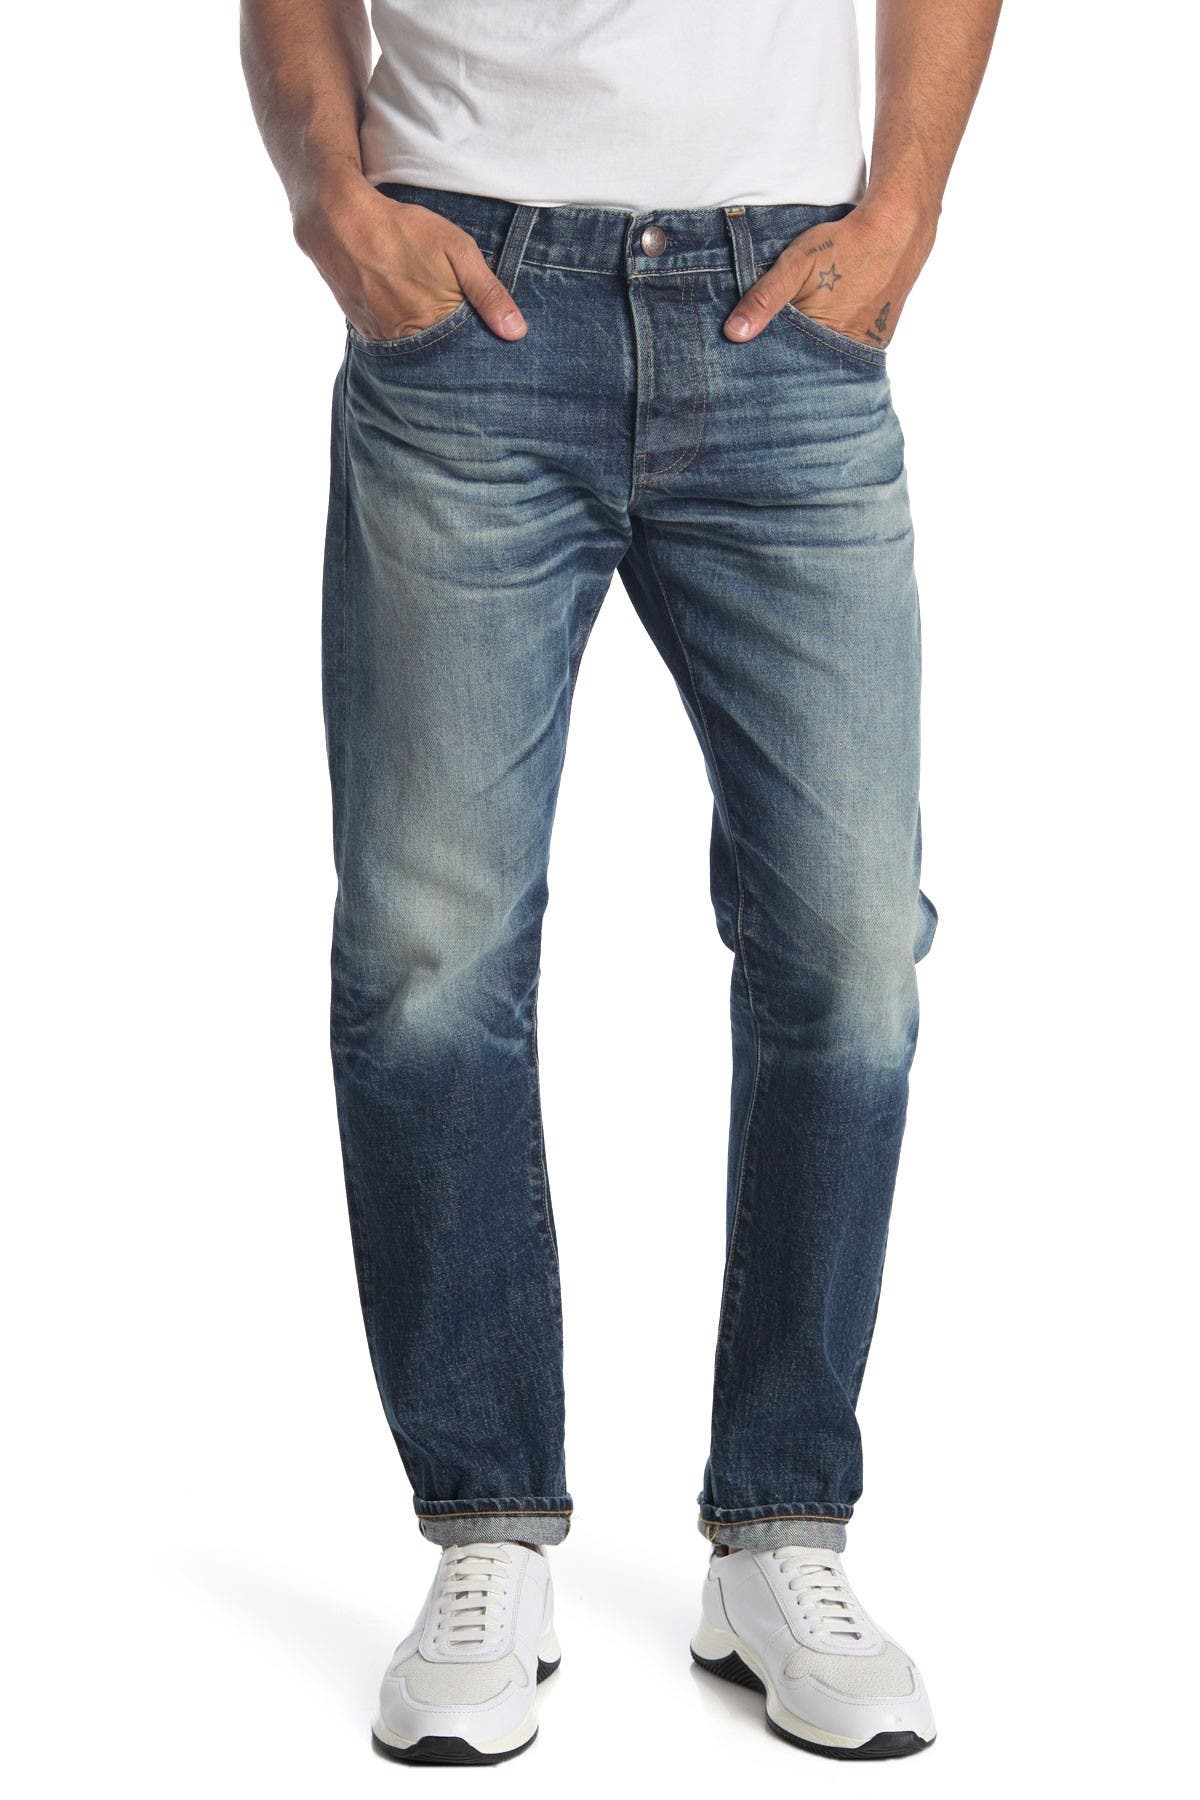 ag jeans clearance